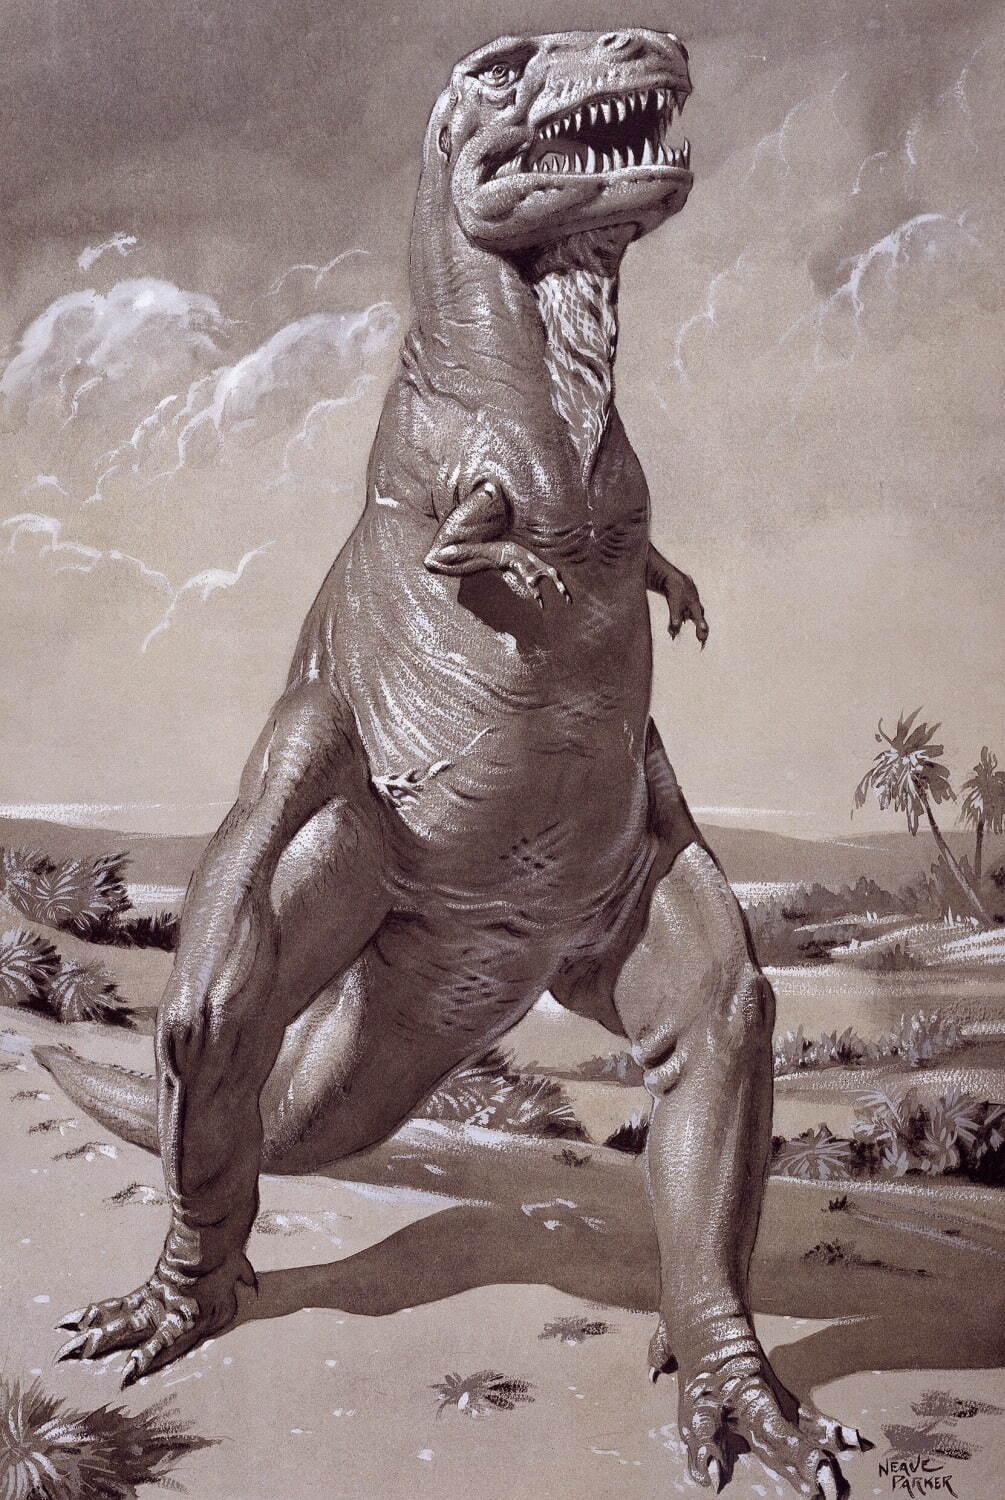 ニーヴ・パーカー
《 ティラノサウルス・レックス 》 1950年代 グアッシュ、インク・紙 54×37.5cm ロンドン自然史博物館